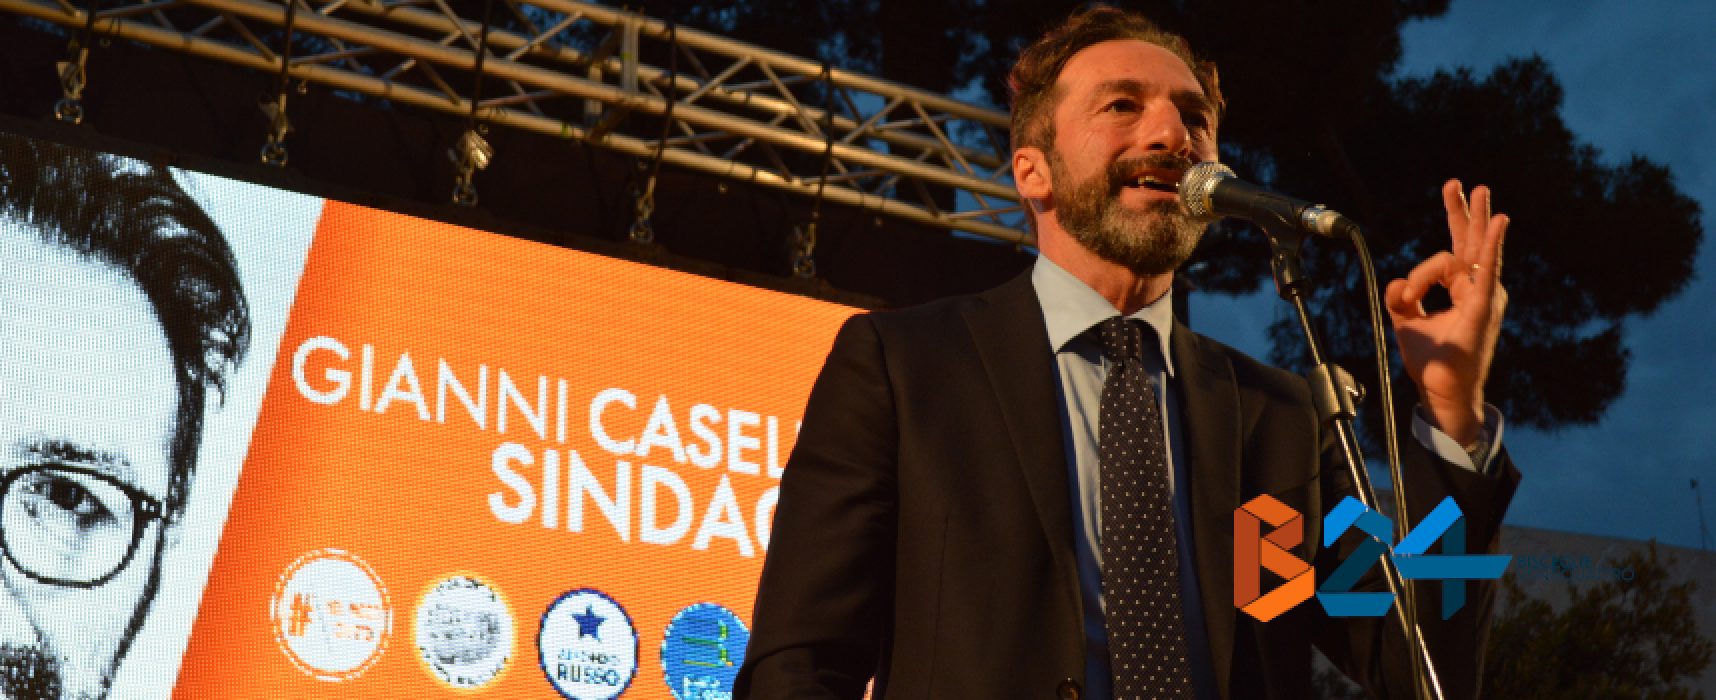 Amministrative, sostegno dell’avvocato Torchetti a Casella: “Sarà sindaco valido e determinato”